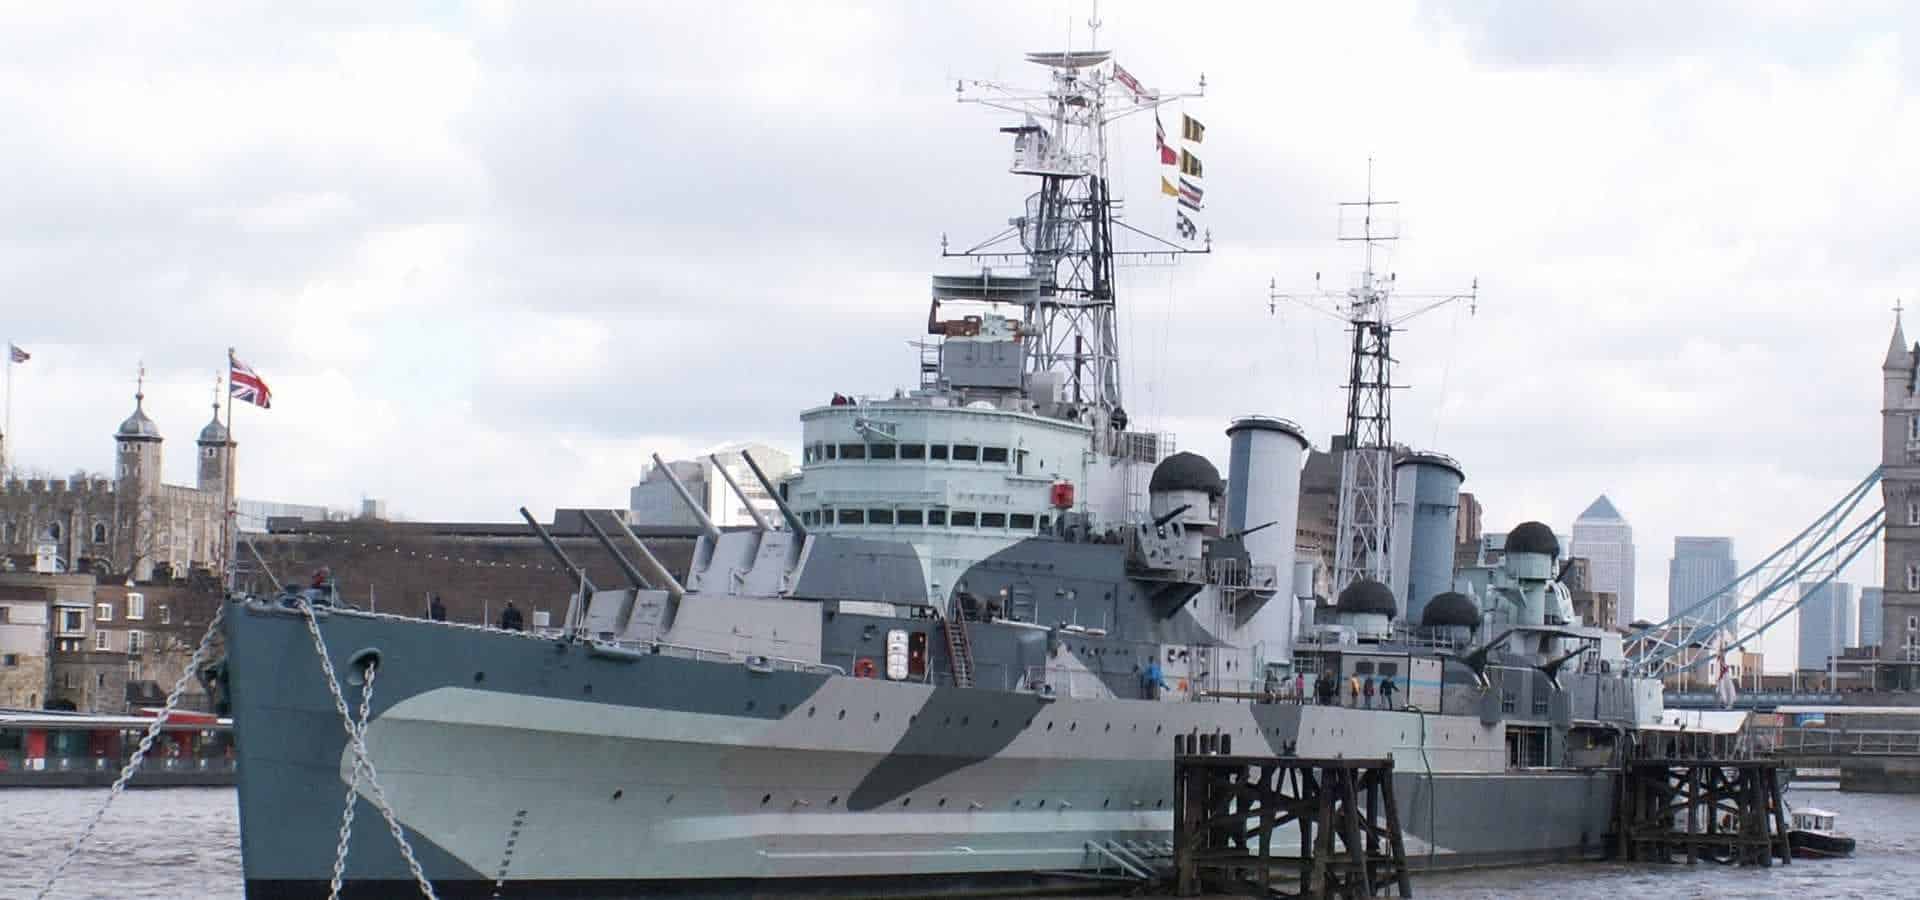 HMS Belfast in UK